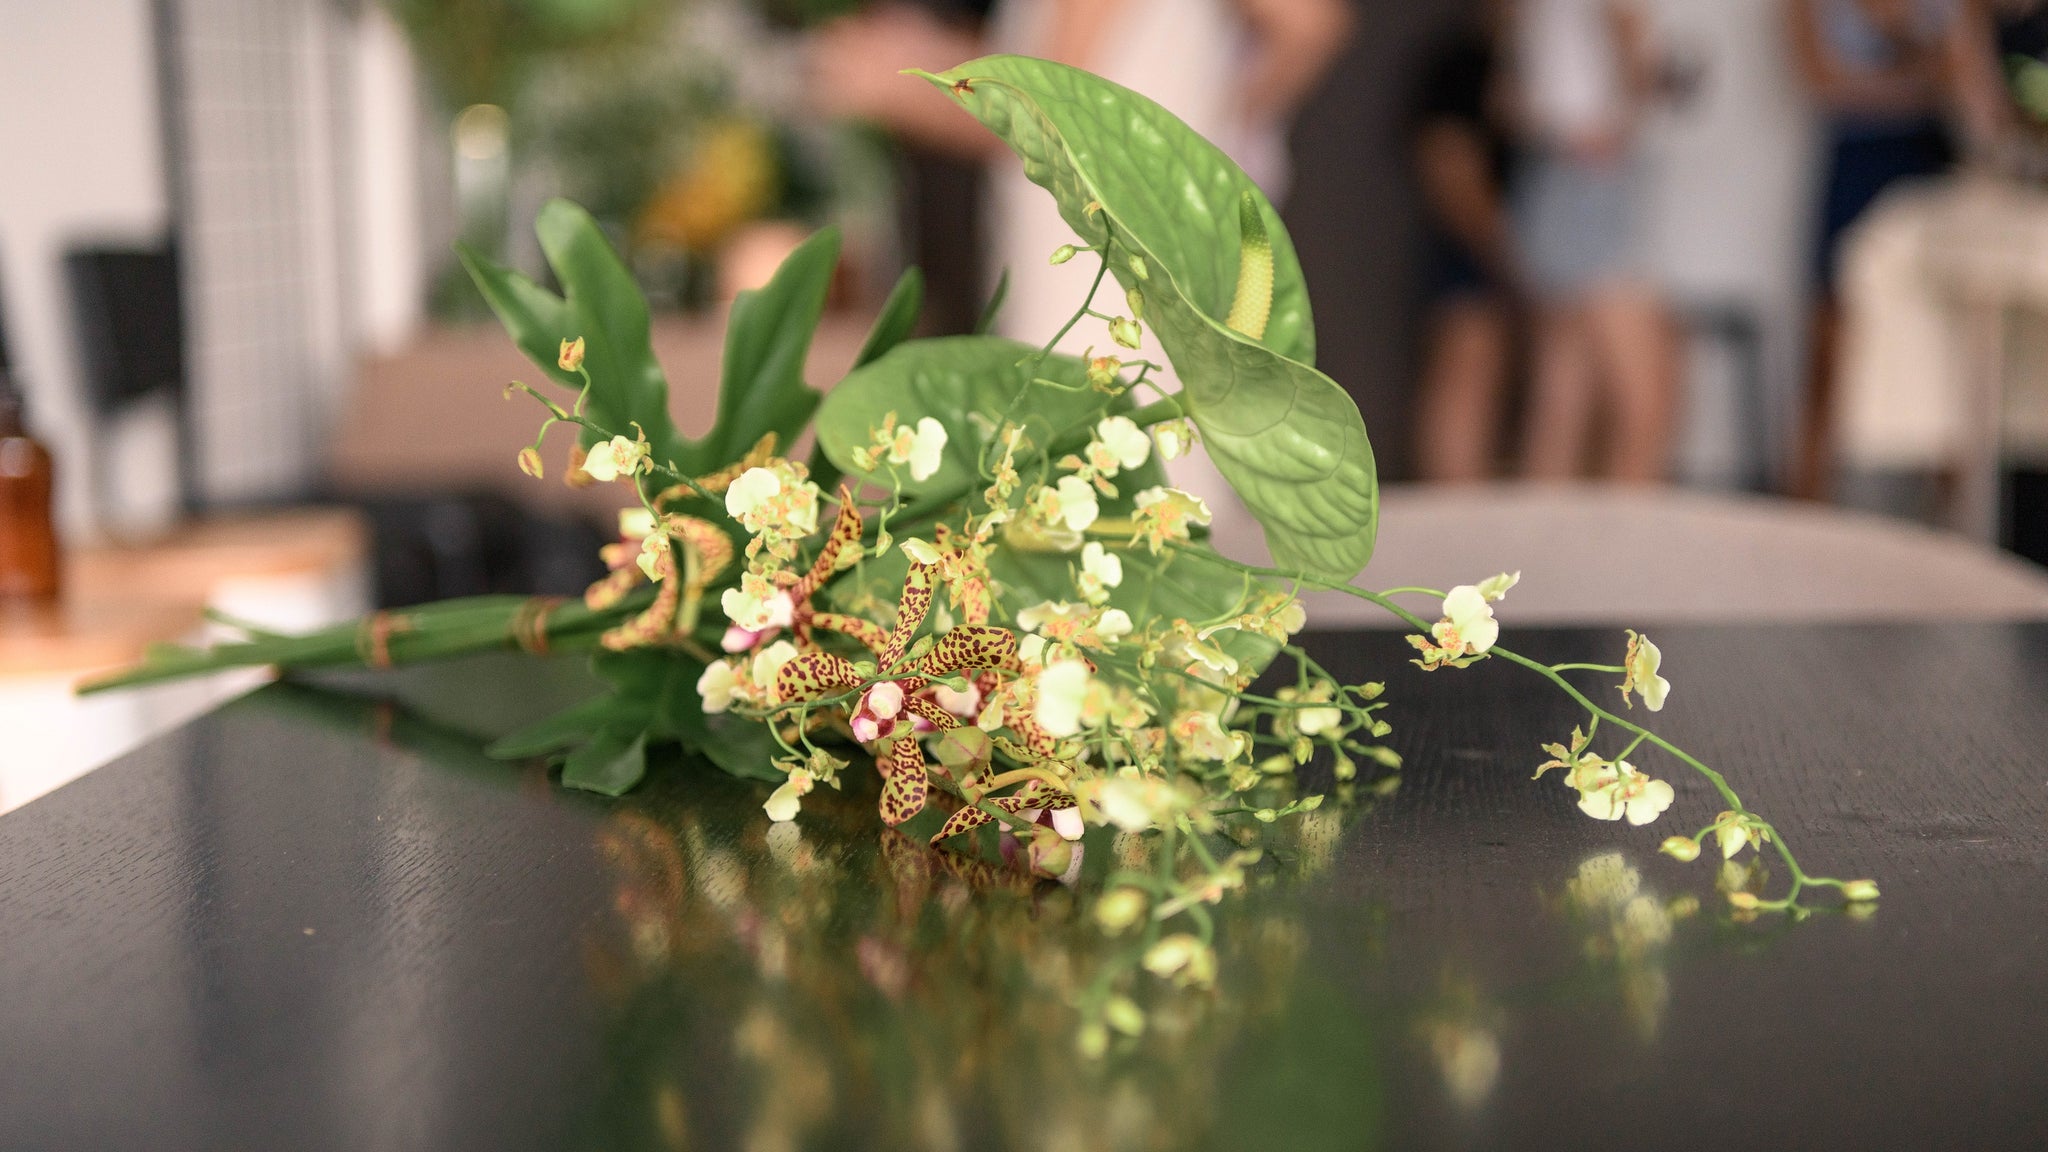 Echevaria.co Studio Launch Event Botanical Floral Arrangements